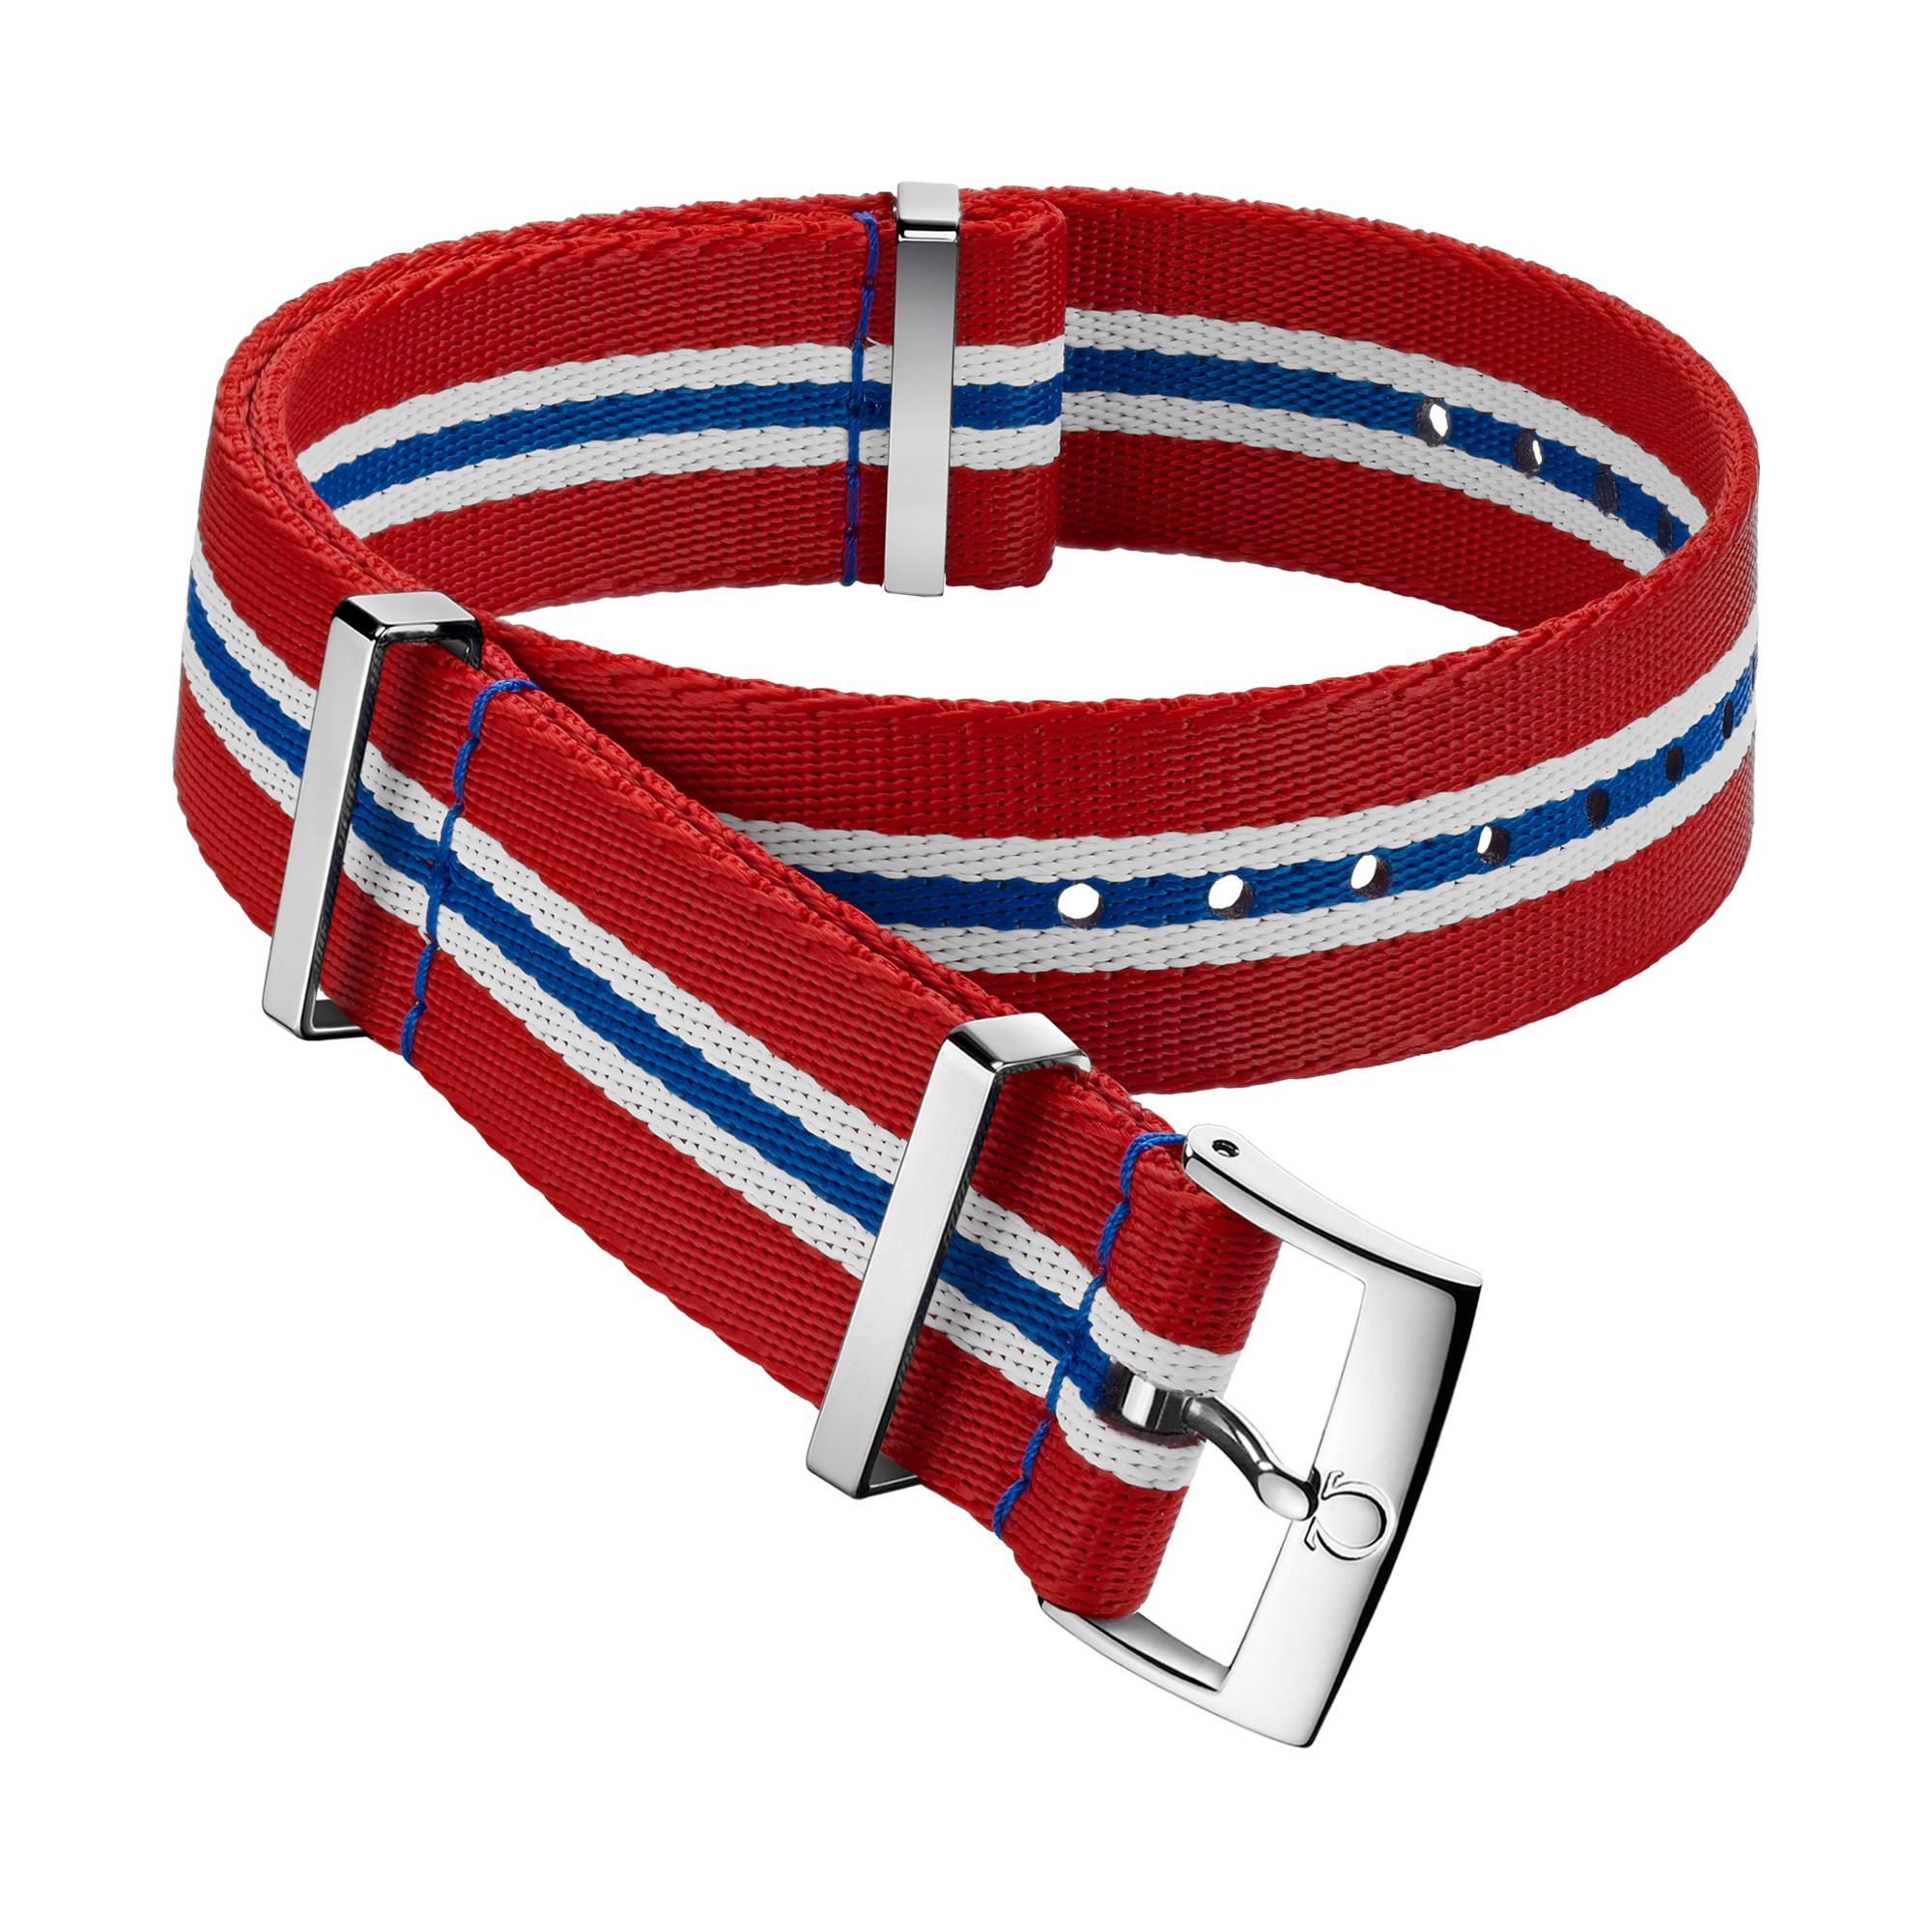 Bracelete NATO - Bracelete em poliamida vermelha, branca e azul com 5 faixas - 031CWZ010686